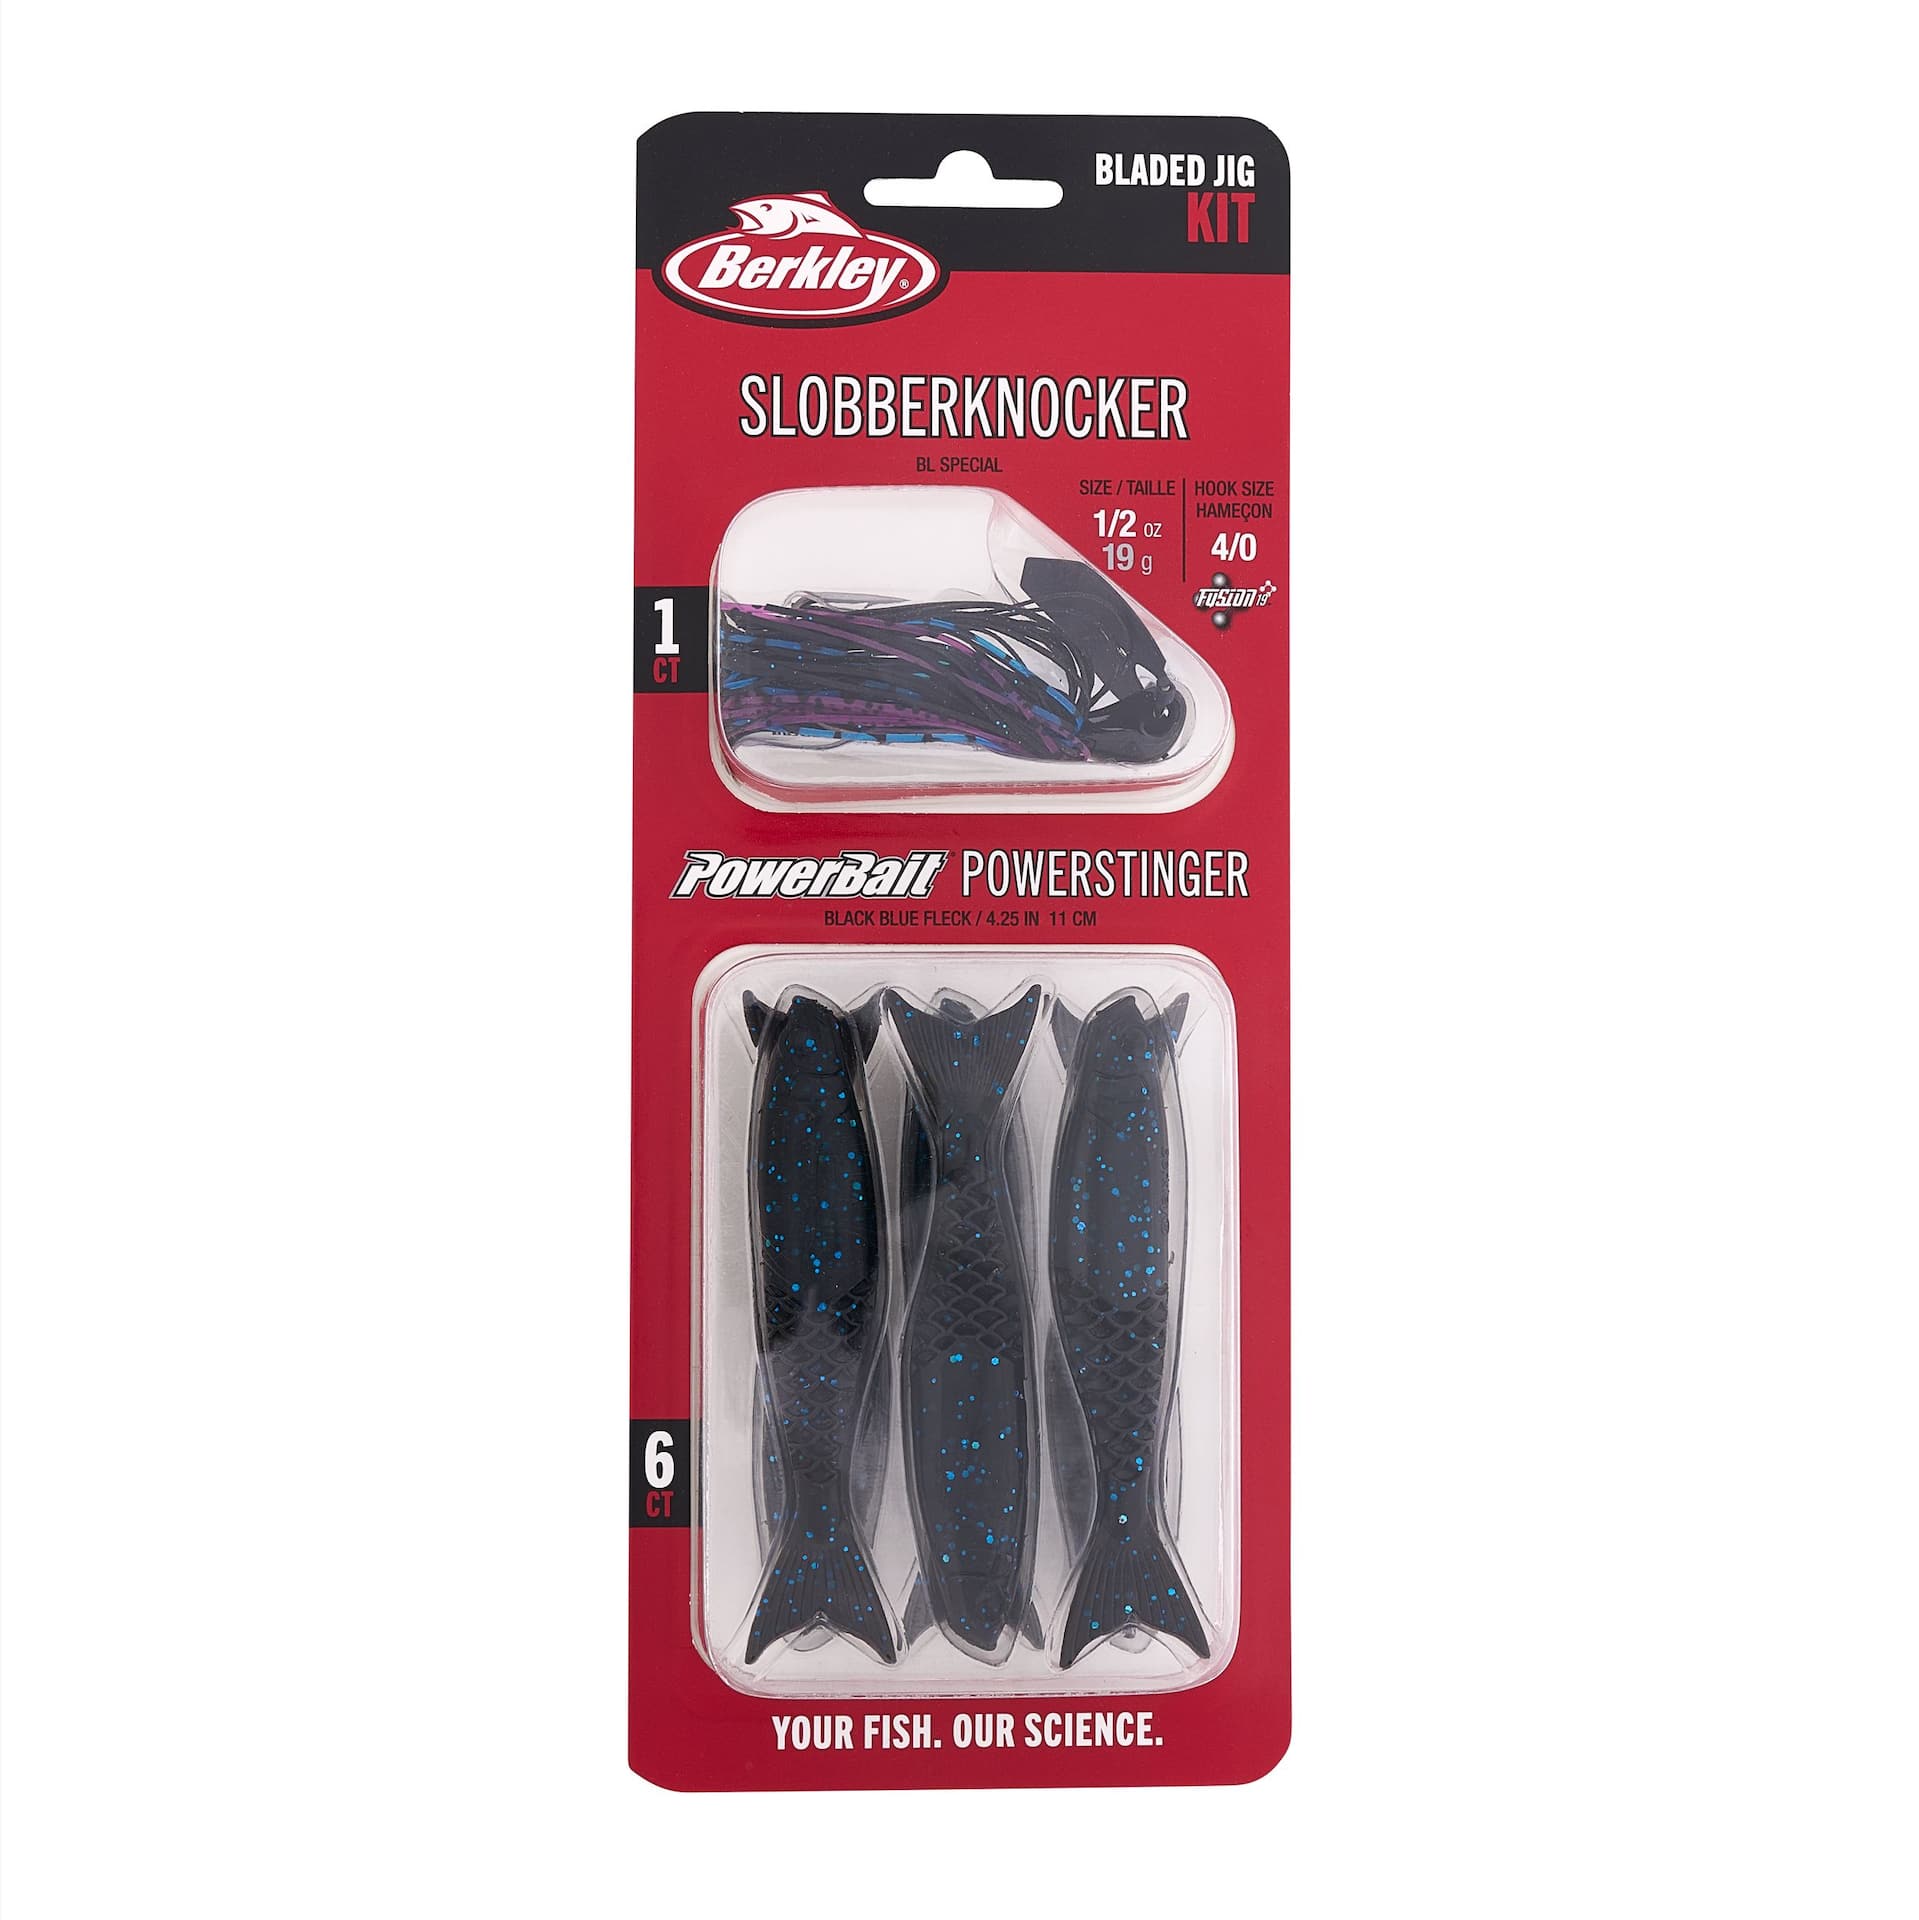 Berkley Slobberknocker & PowerBait® PowerStinger Bladed Jig Kit